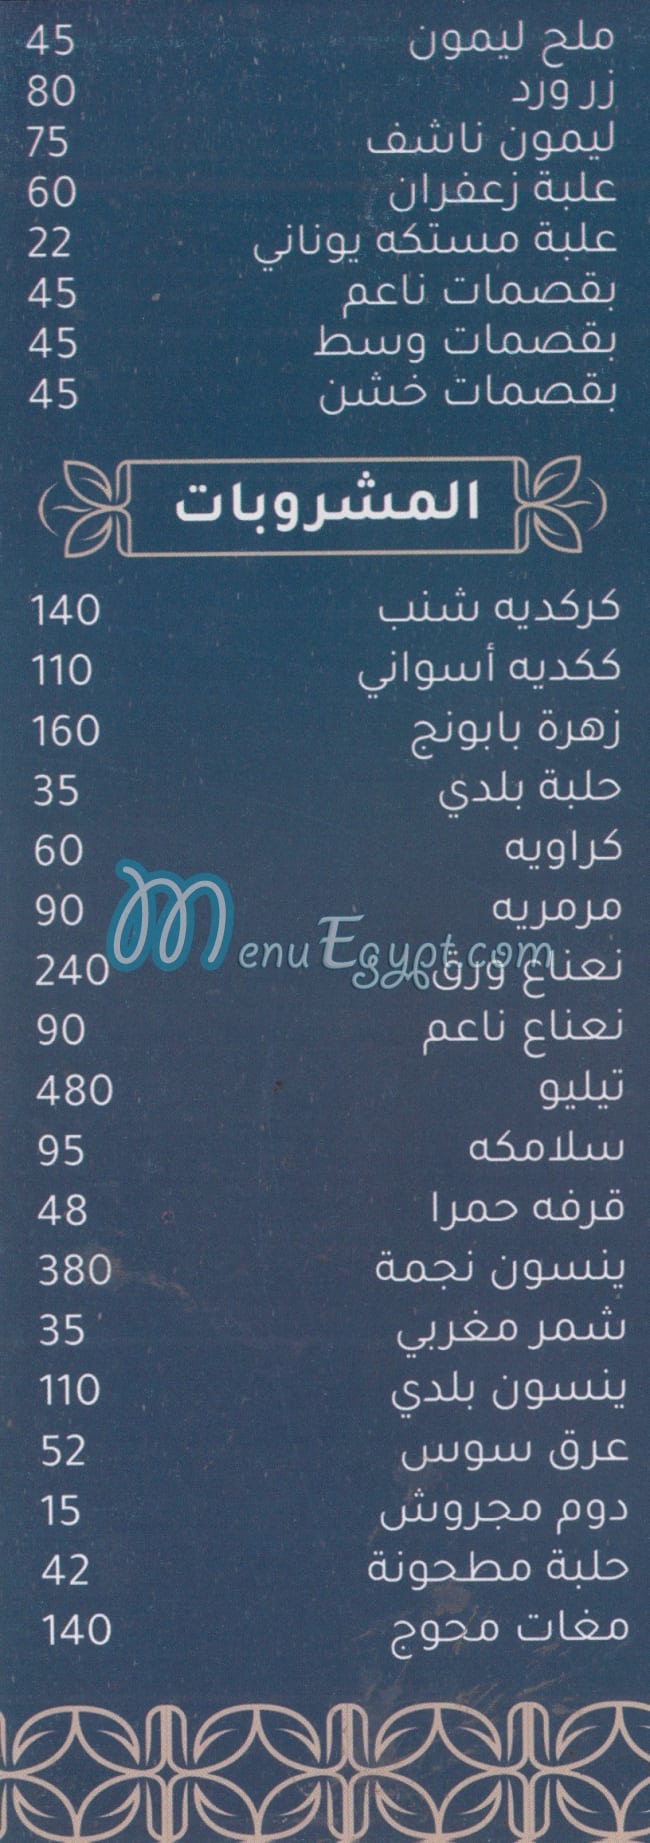 رقم كافنوز ستور مصر